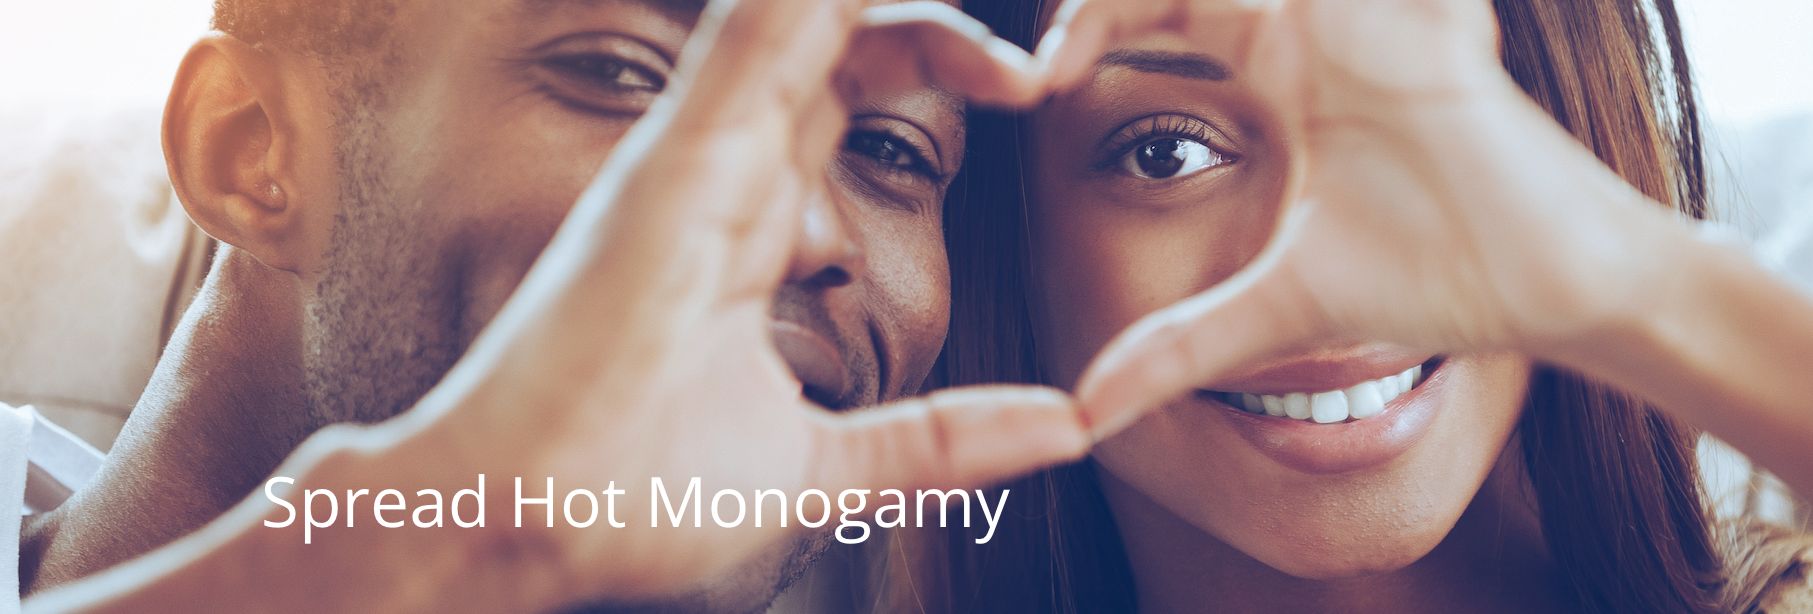 Spread Hot Monogamy